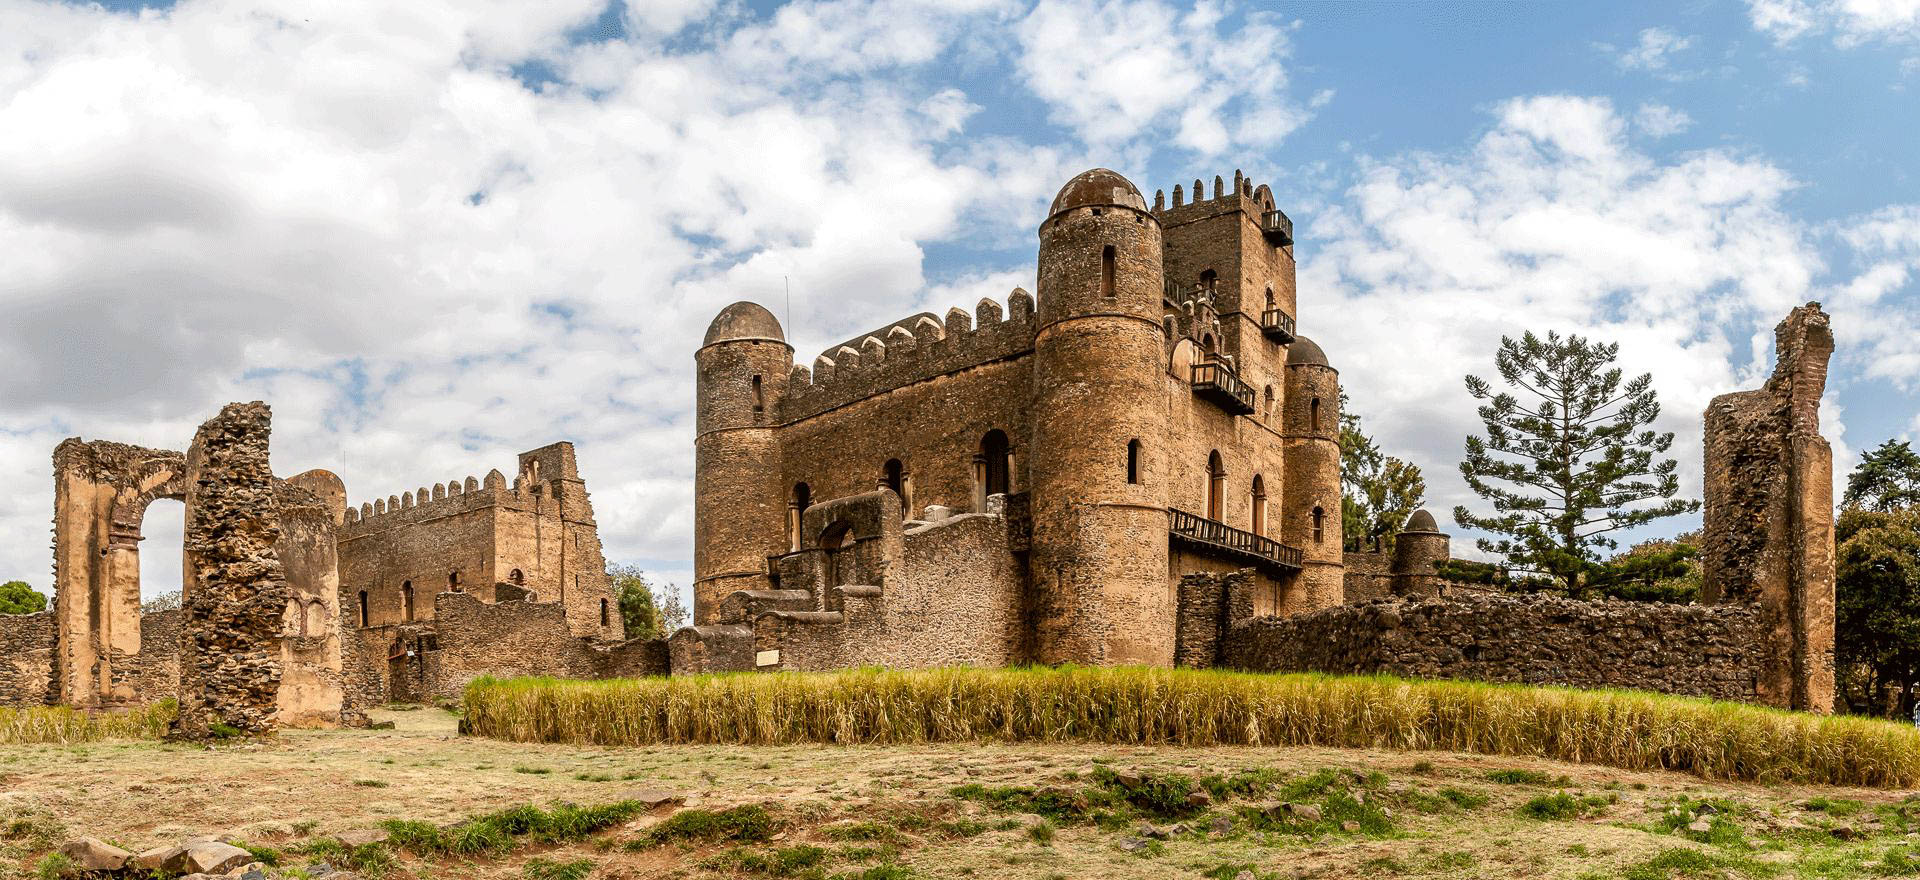 Ethiopia Holidays - Gondar - Fasiladas' Palace